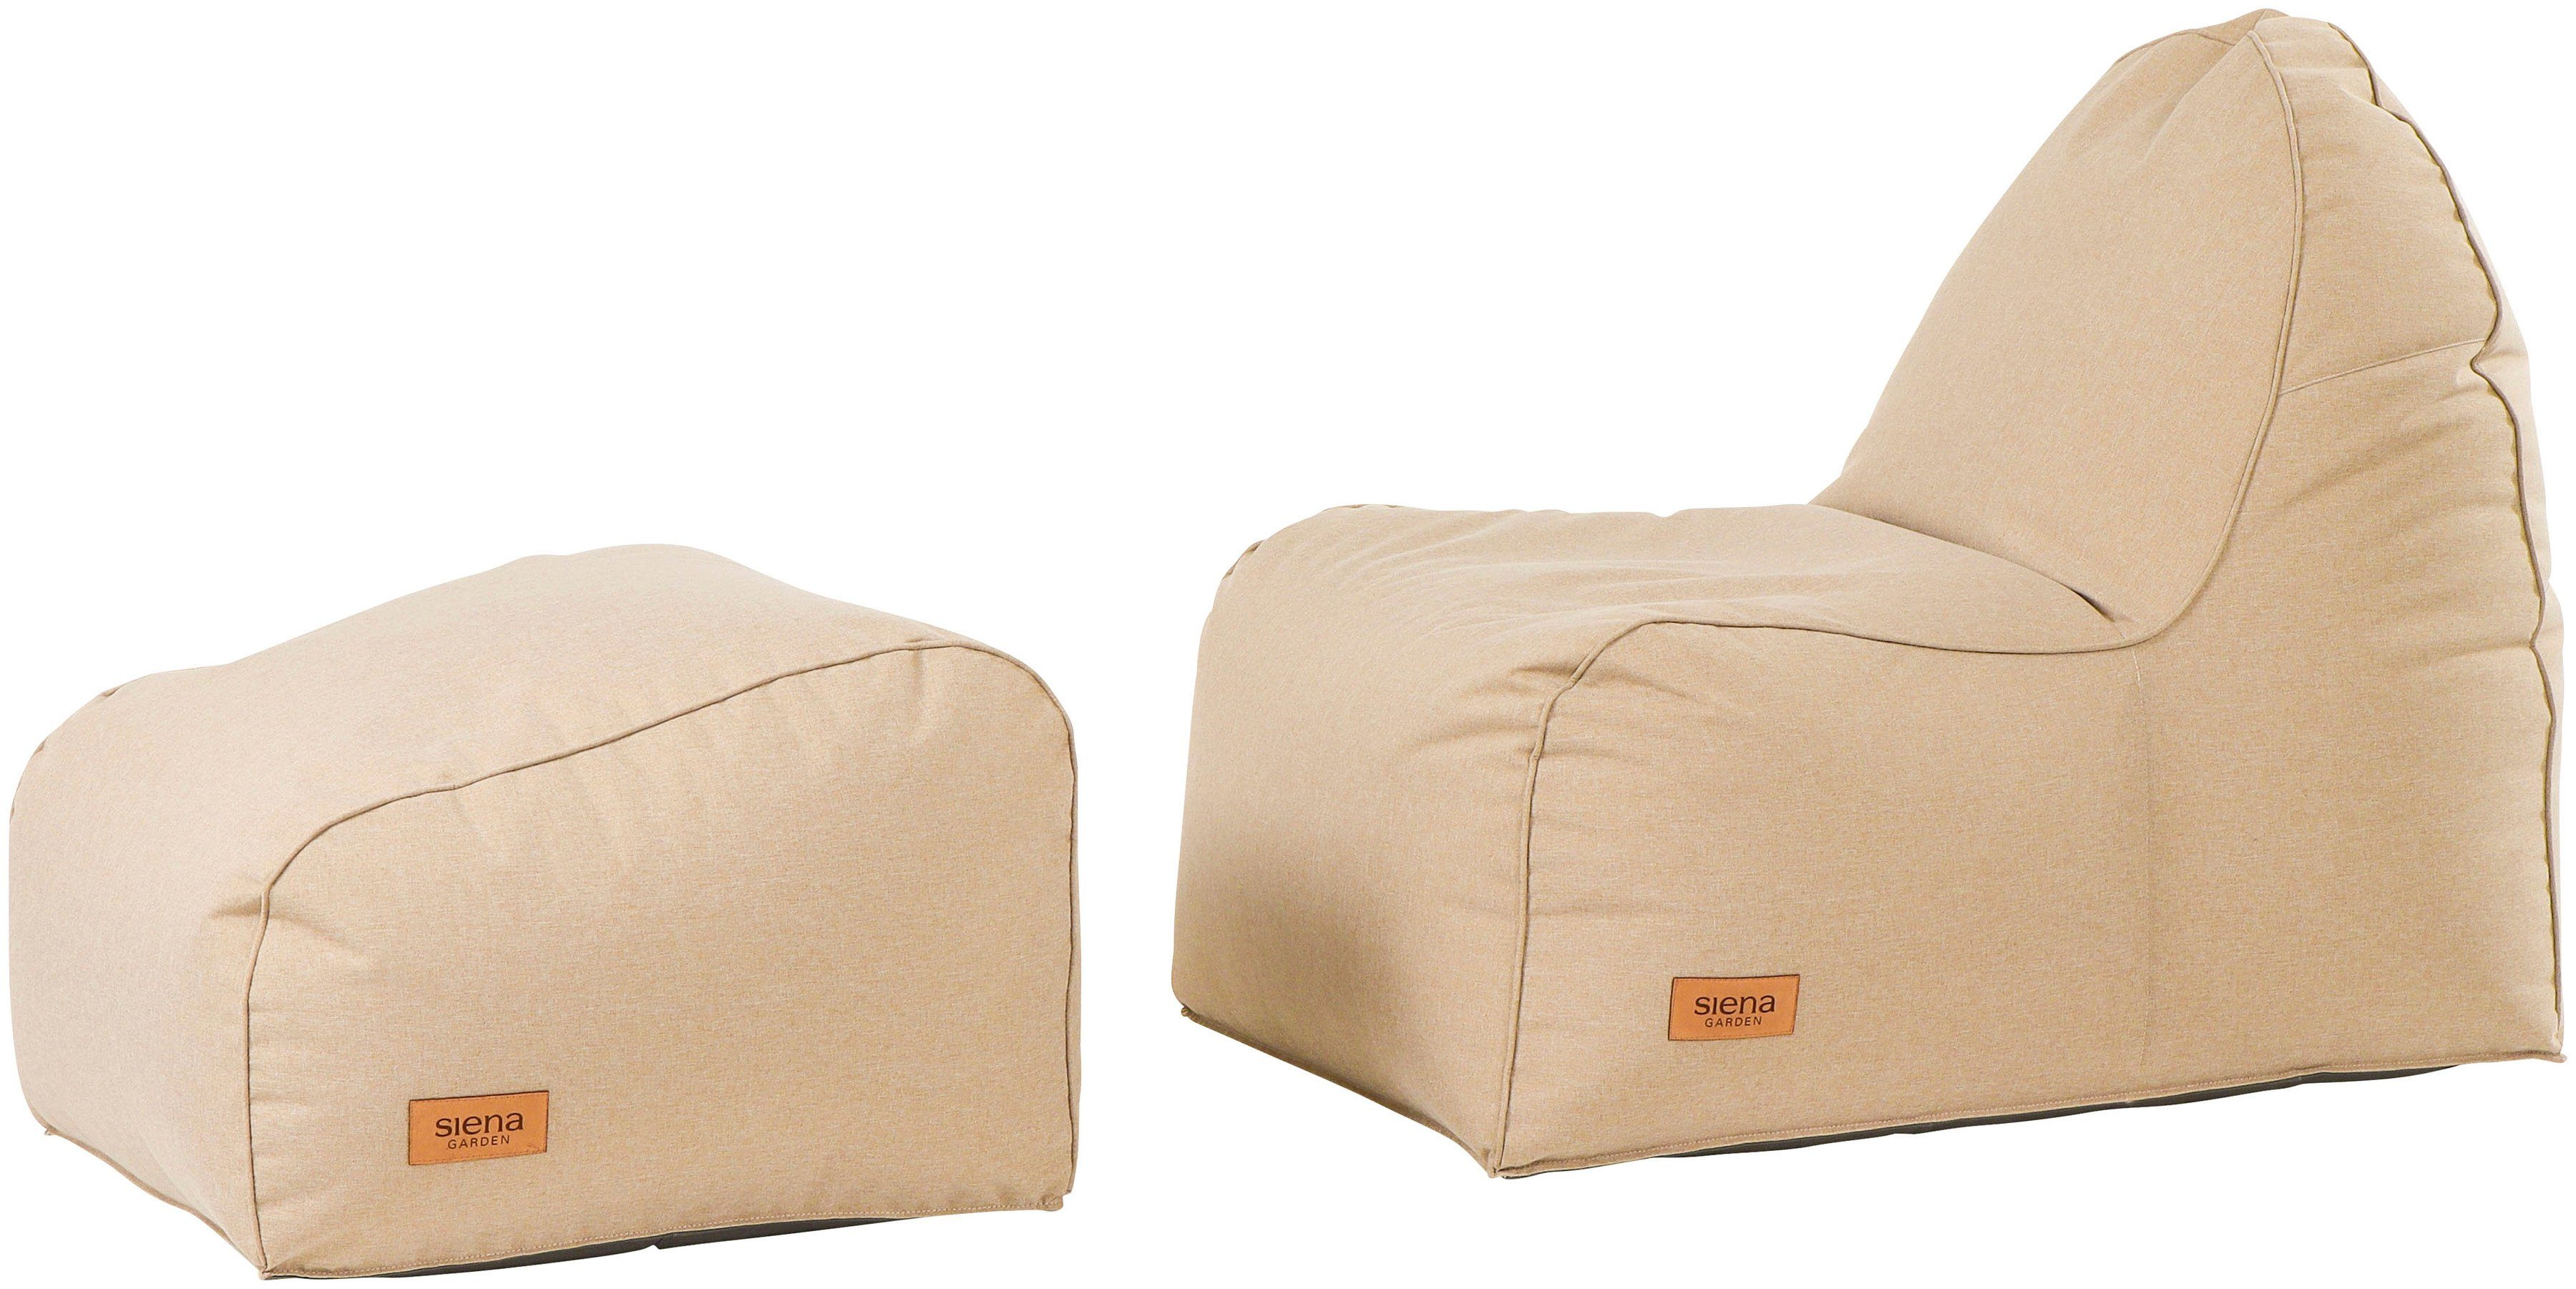 Siena Garden Sitzsack FLOW.U Feet, Indoor & Outdoor, in verschiedenen  Farben erhältlich, Dank praktischen Griff einfach zu transportieren | Sitzsäcke